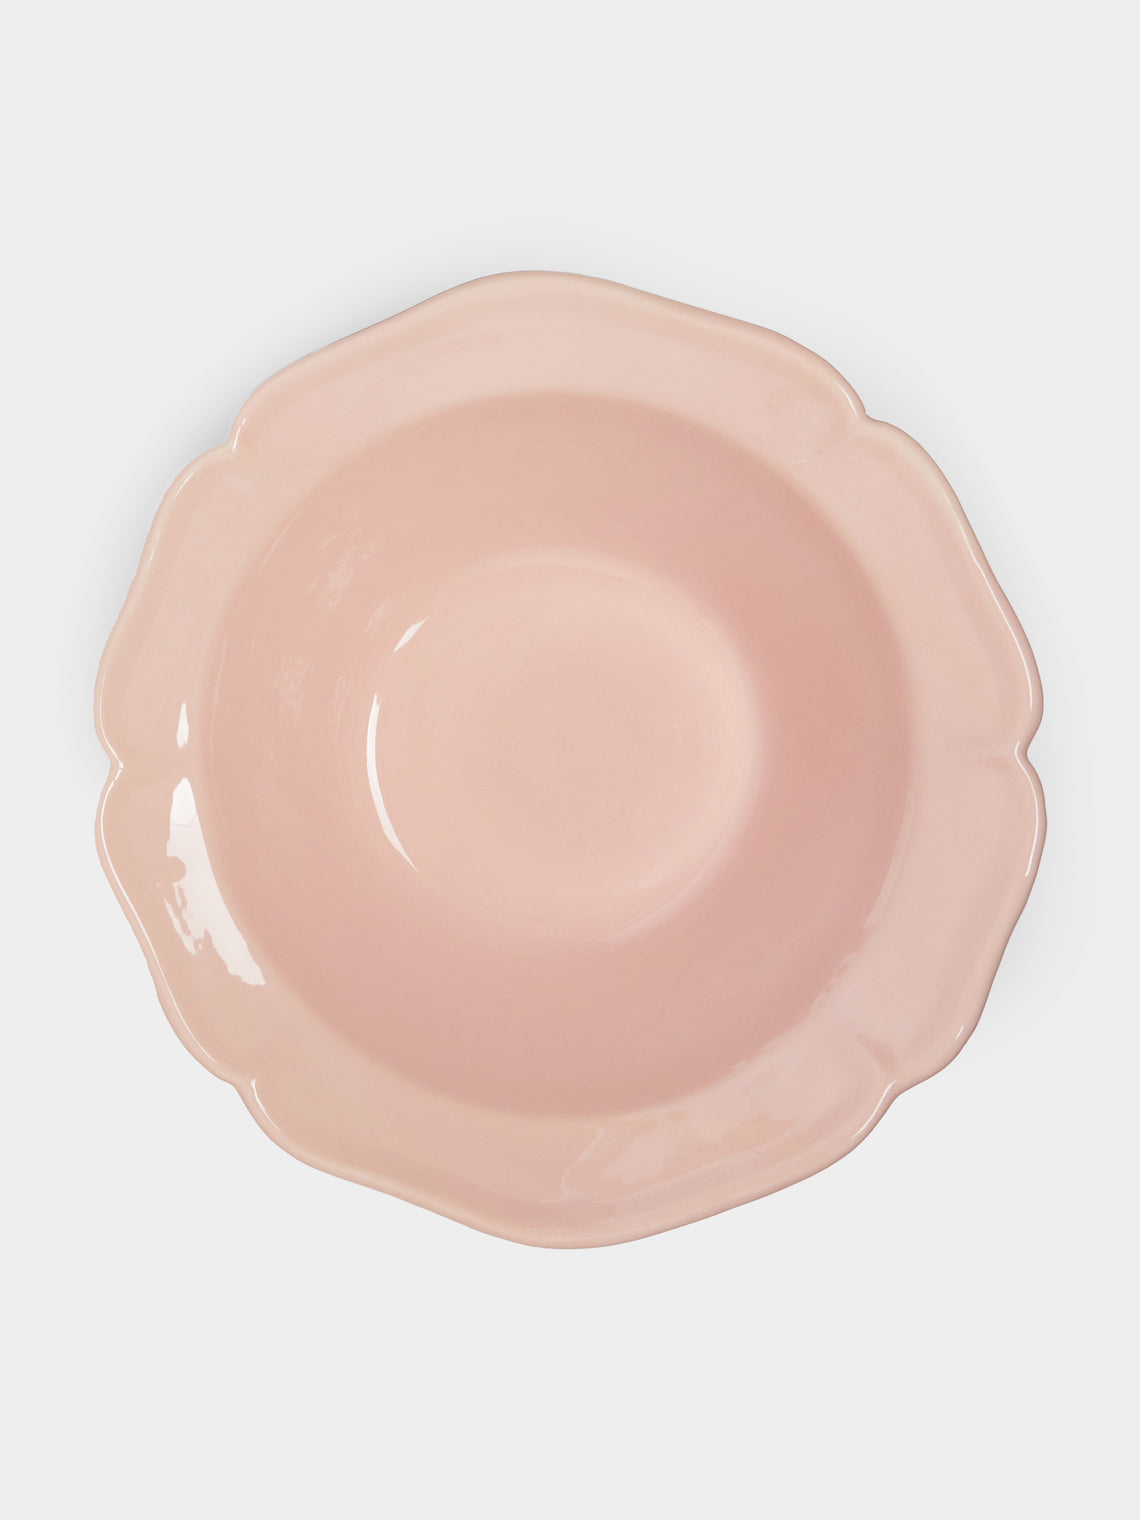 Maison Pichon Uzès - Louis XV Campagne Hand-Glazed Ceramic Serving Bowl -  - ABASK